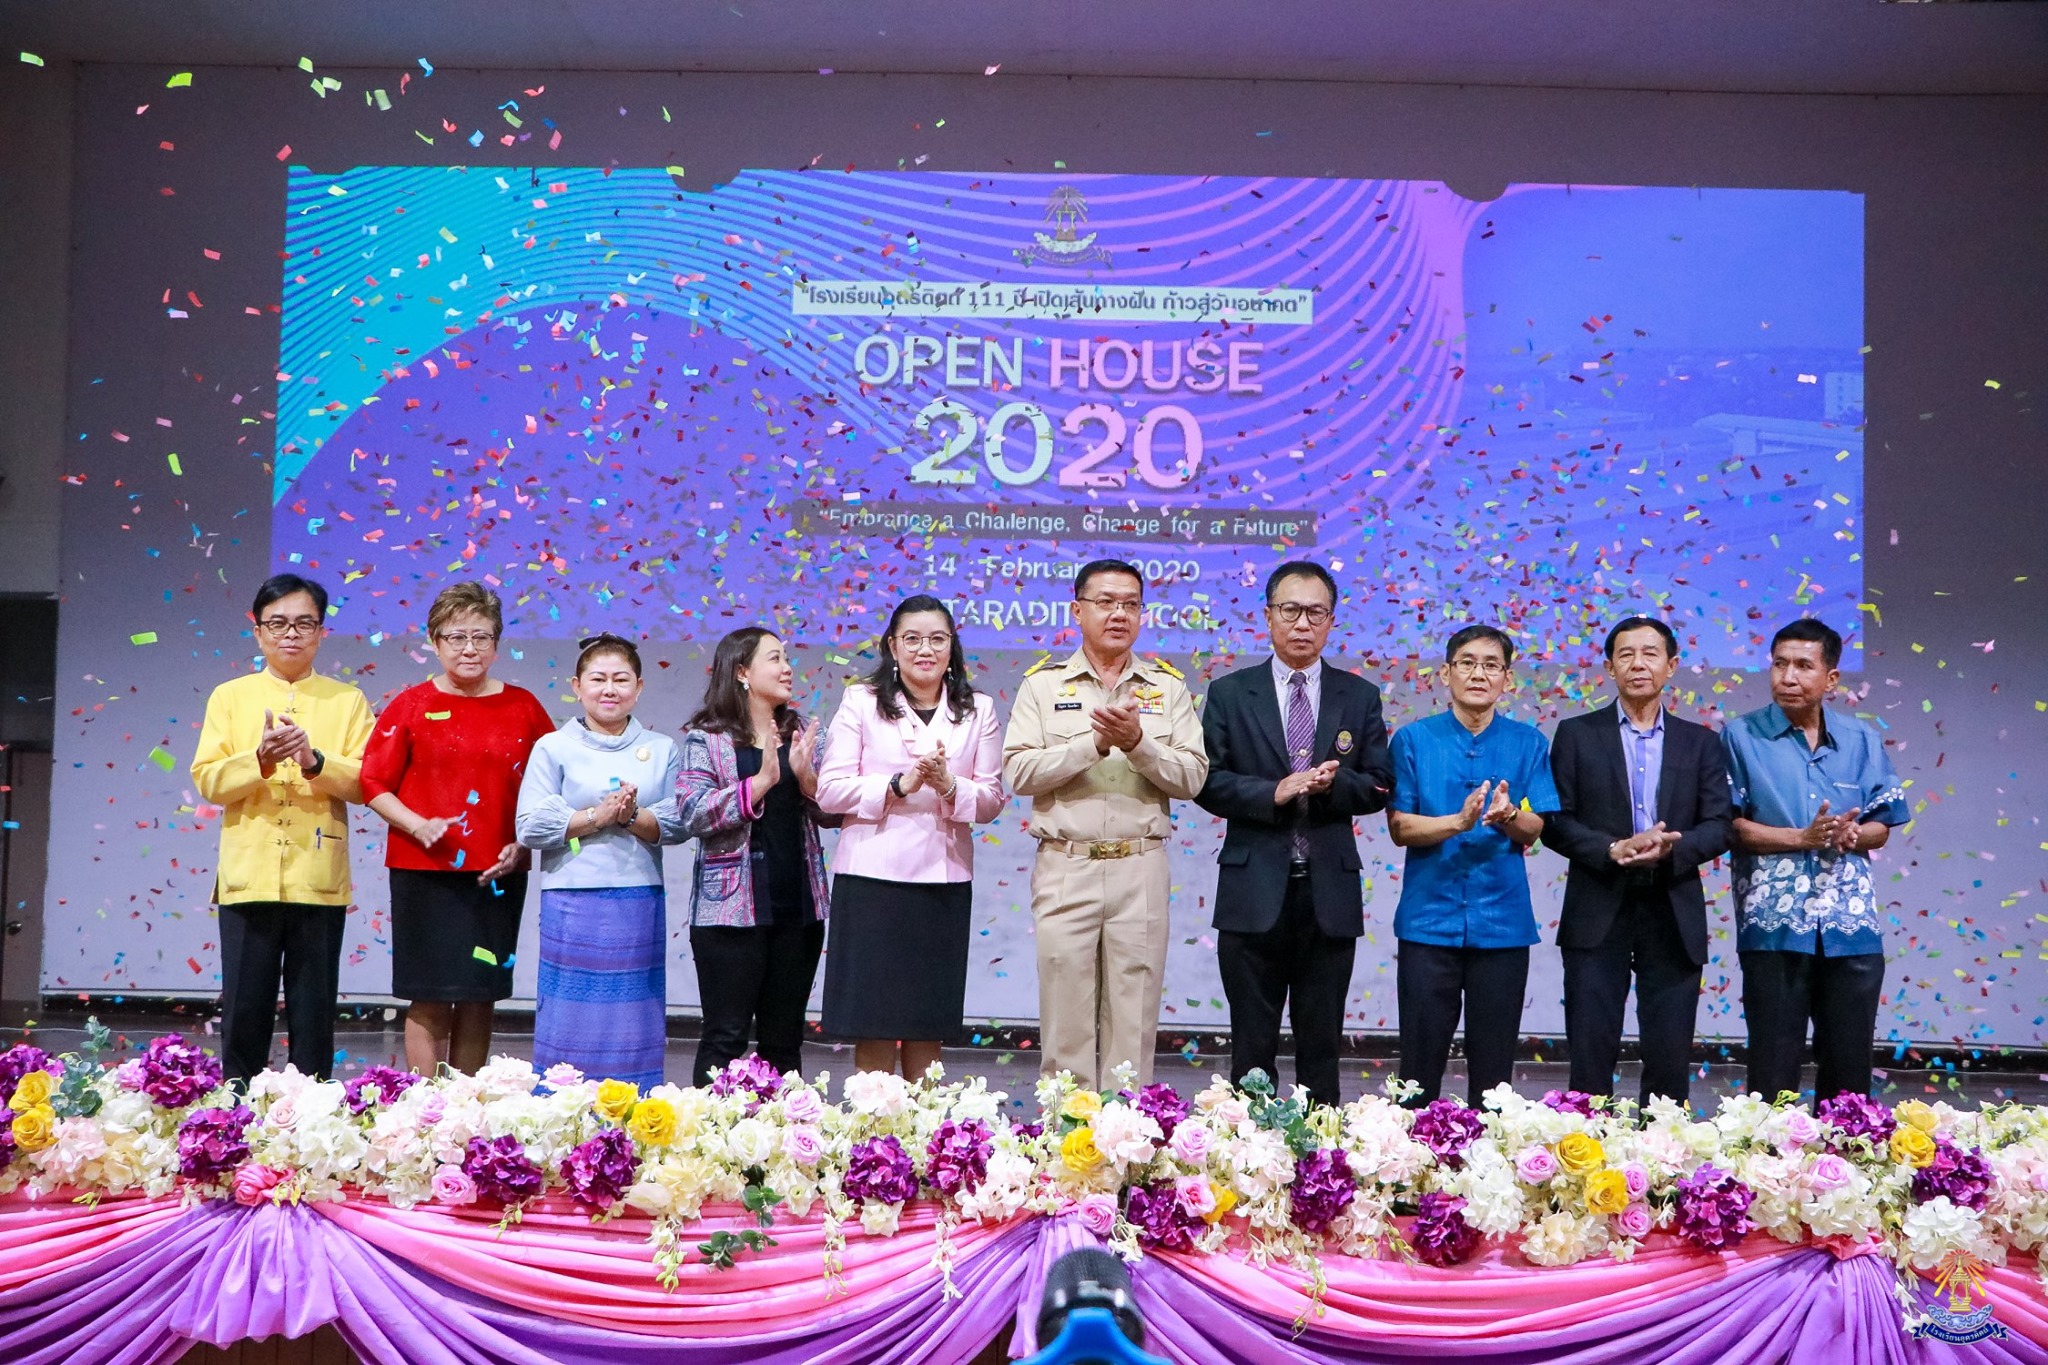 กิจกรรม Open House 2020 โรงเรียนอุตรดิตถ์ 111 ปี เปิดเส้นทางฝัน ก้าวสู่วันอนาคต “Embrance a Challenge, change for a future”